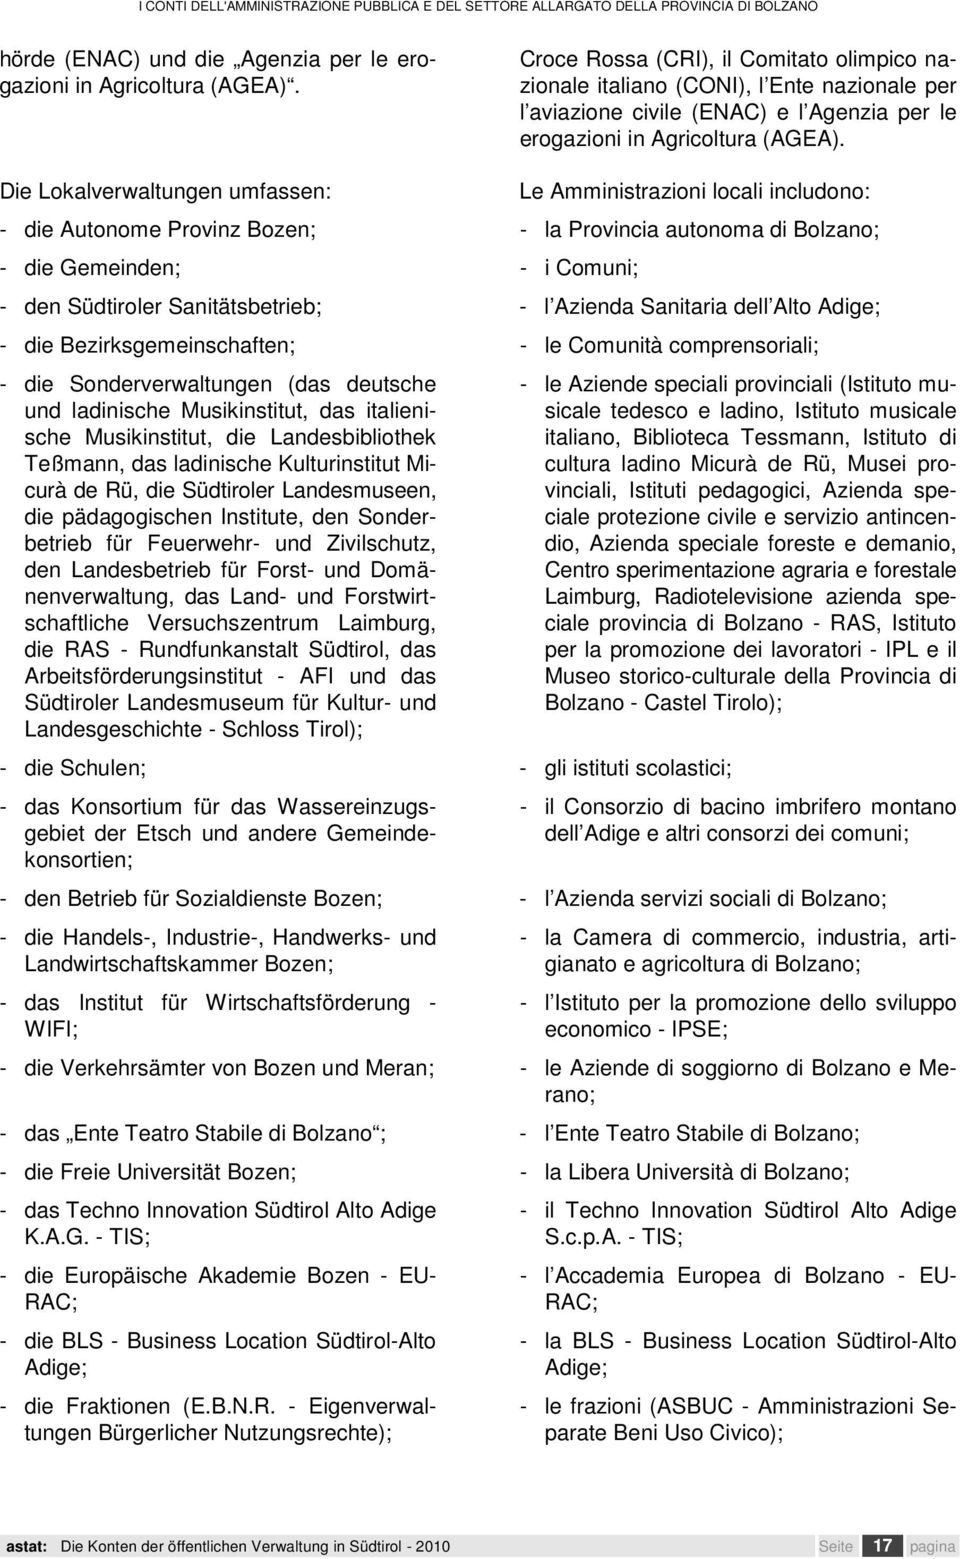 Die Lokalverwaltungen umfassen: Le locali includono: - die Autonome Provinz Bozen; - la Provincia autonoma di Bolzano; - die Gemeinden; - i Comuni; - den Südtiroler Sanitätsbetrieb; - l Azienda